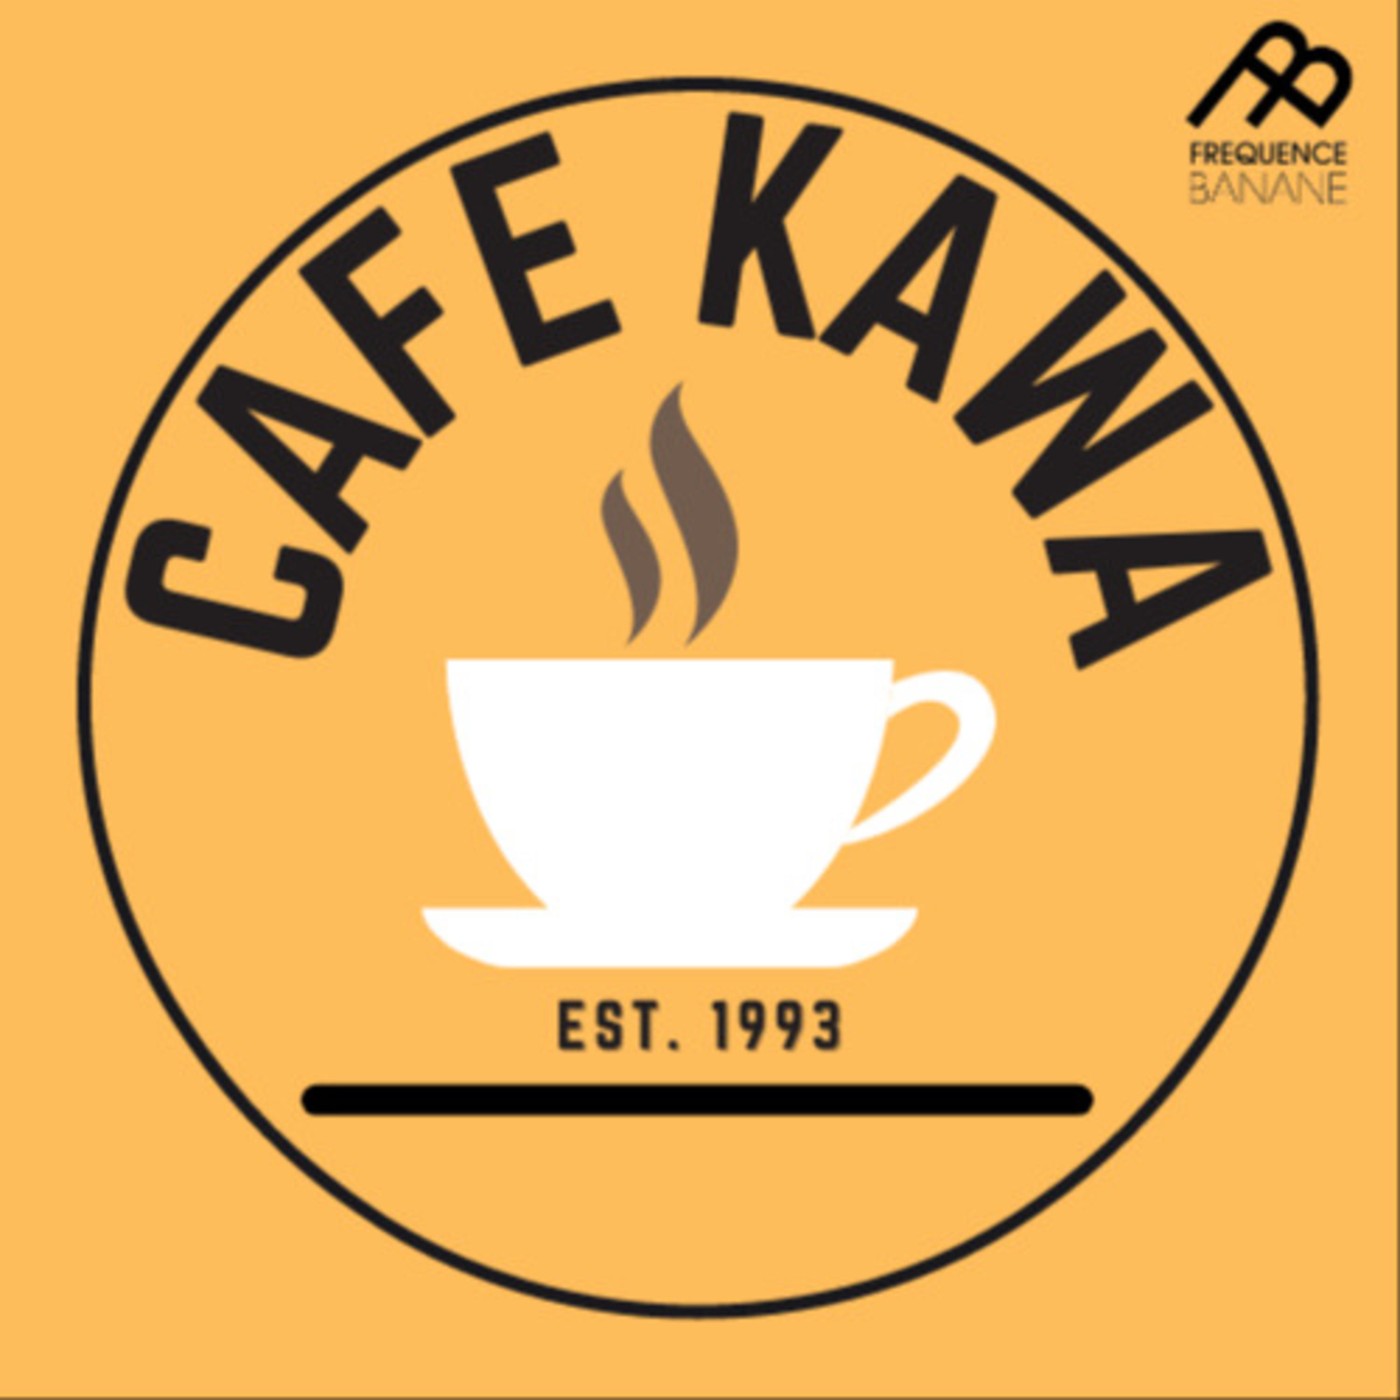 Café Kawa Mosquito vibes 30.03.2021